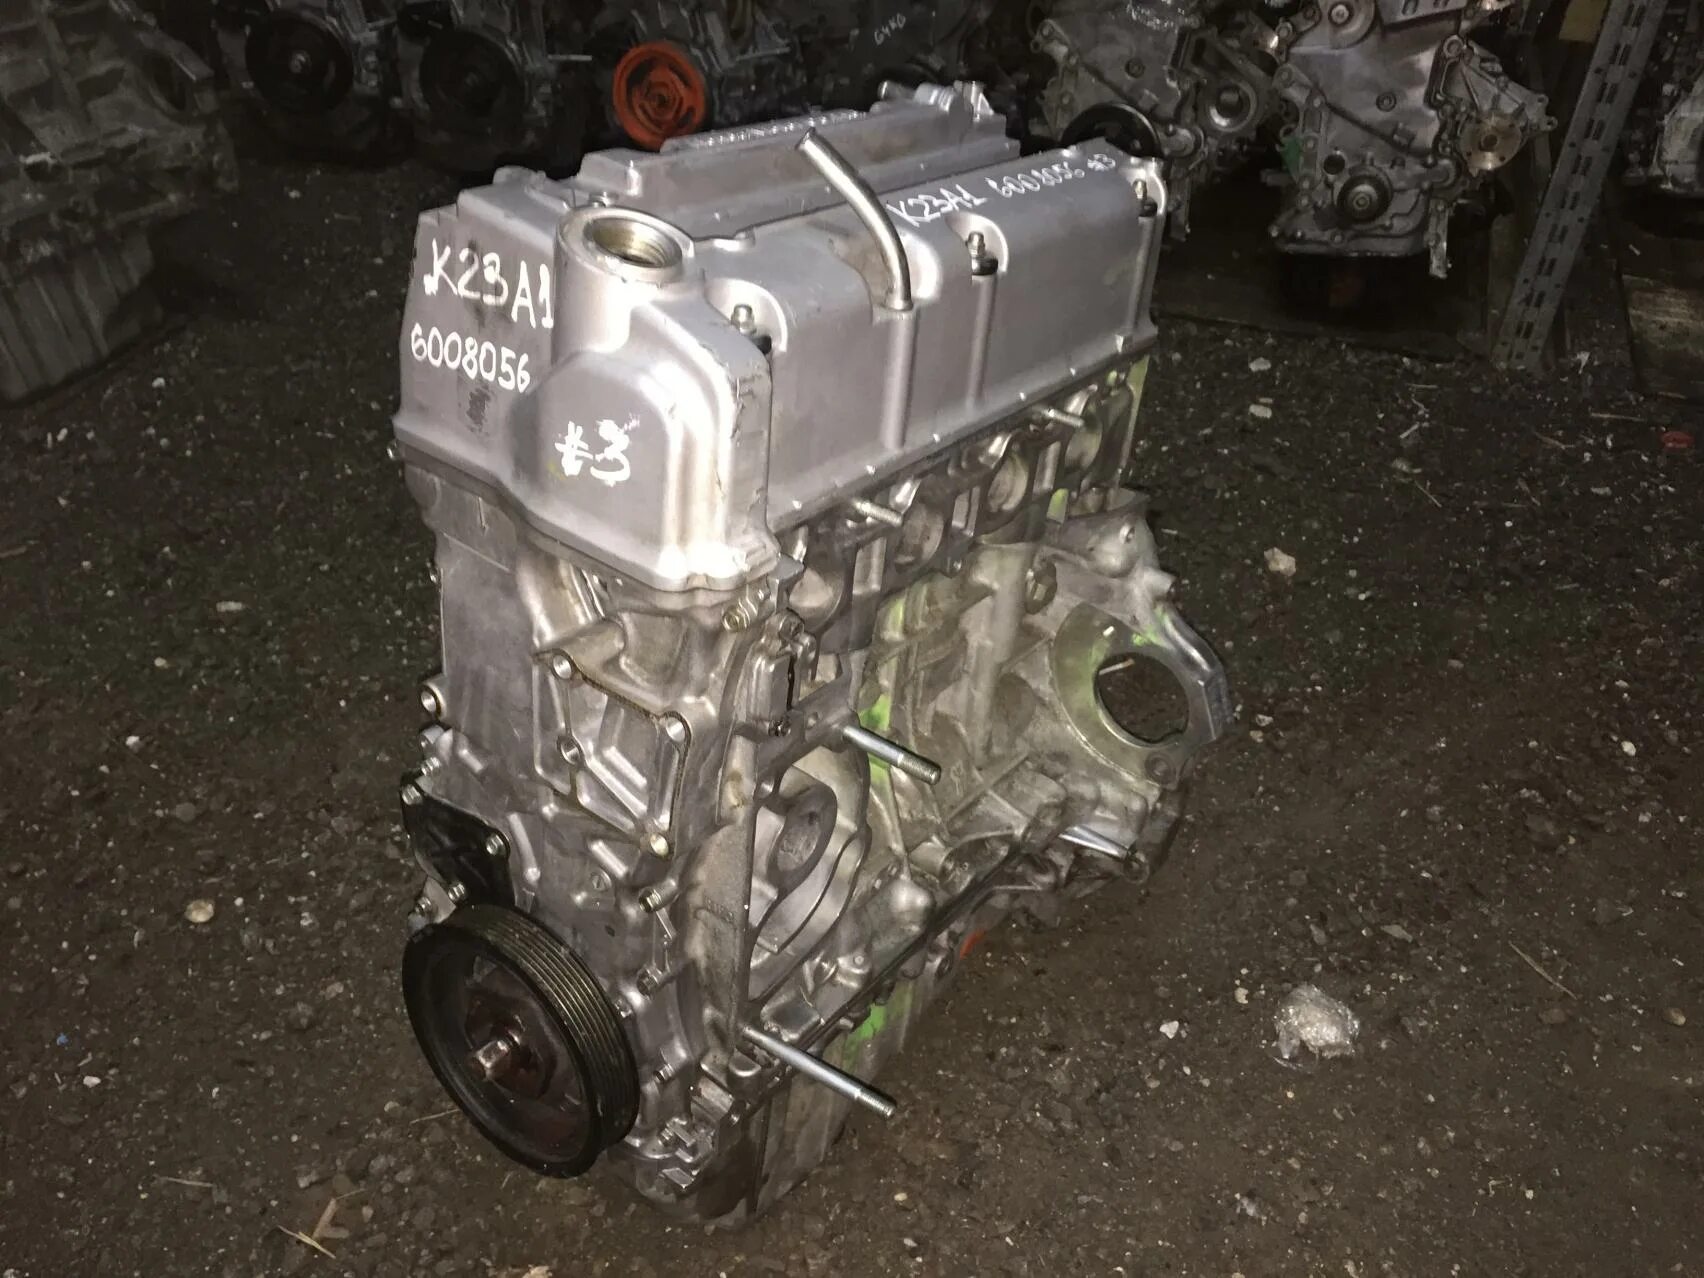 K23a1 двигатель. Мотор РДХ 2.3. K23a1 двигатель турбо Acura. Двигатель Acura RDX.